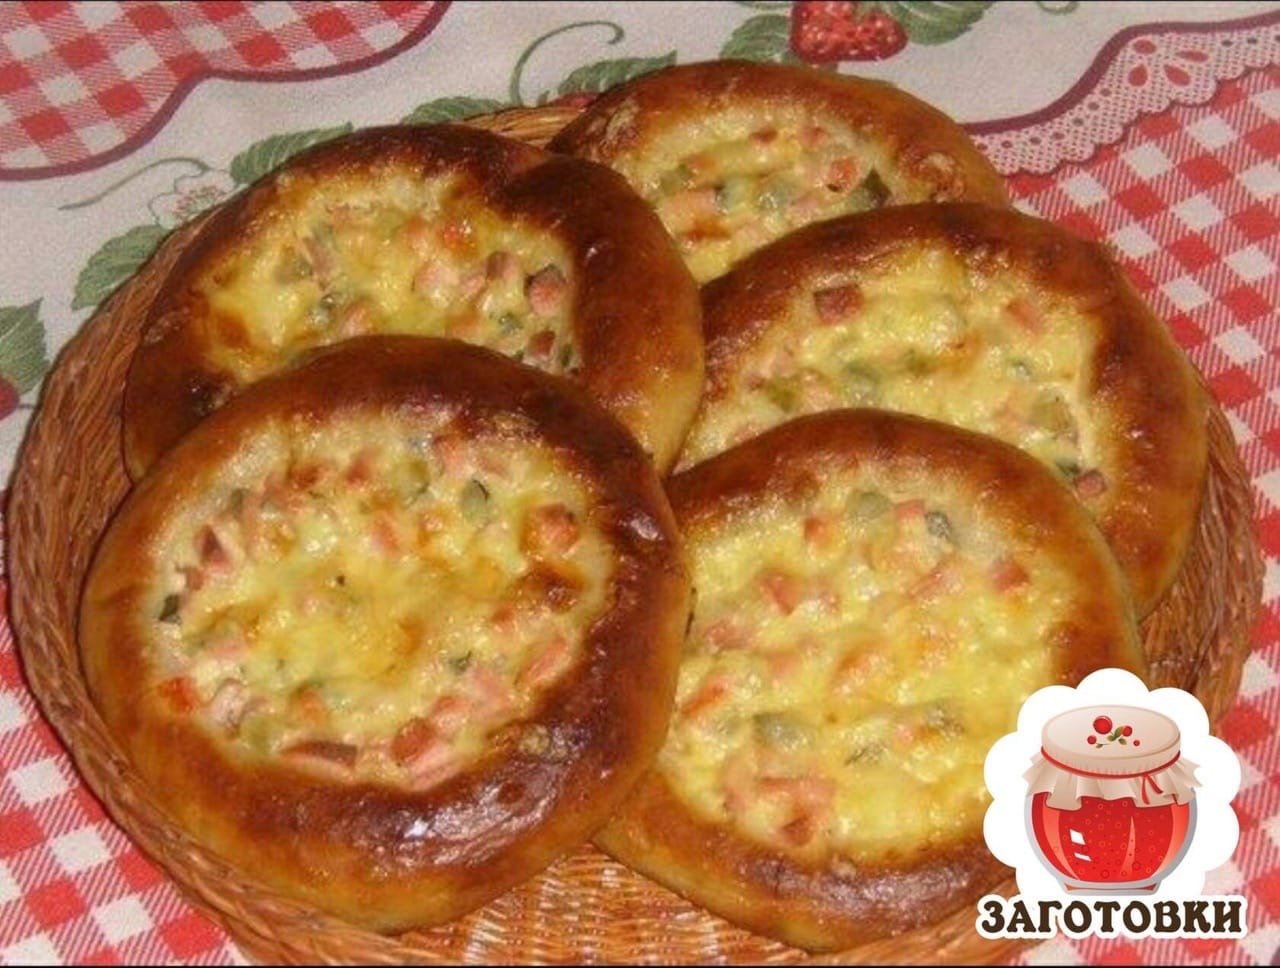 мини пицца в духовке из дрожжевого теста с колбасой и сыром рецепт с фото пошаговый фото 89